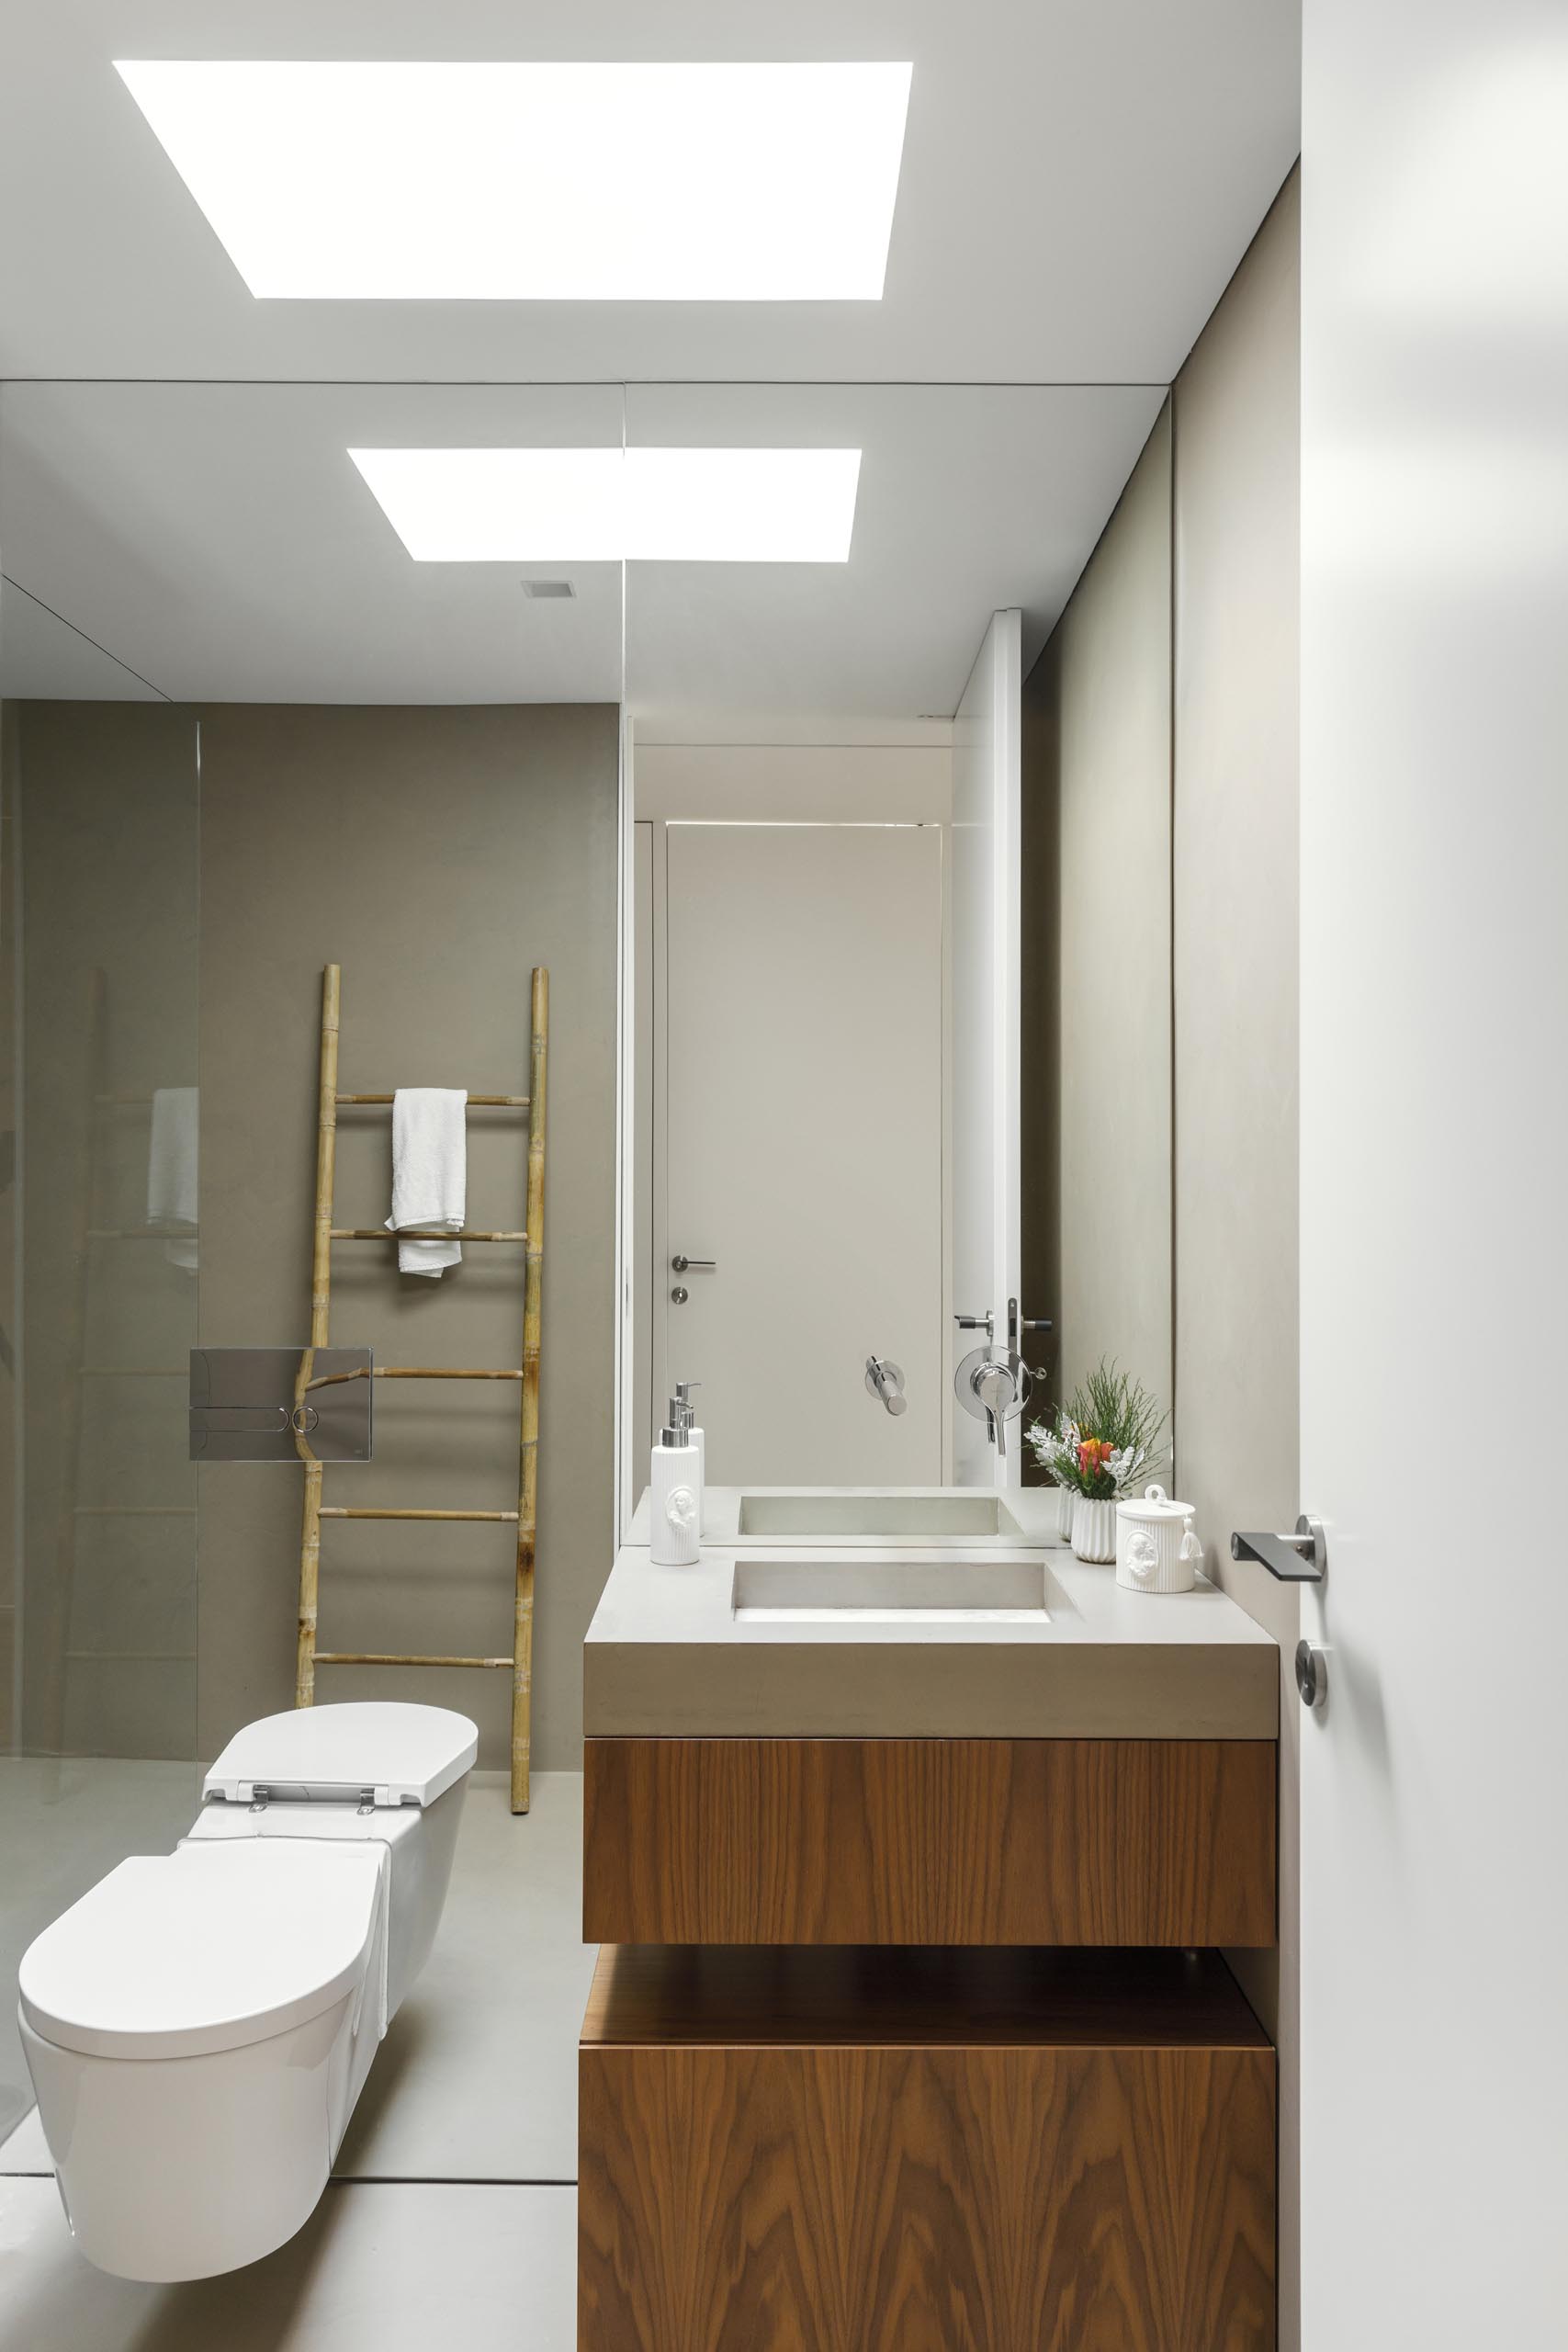 Современная ванная комната со встроенной раковиной и зеркалом от пола до потолка.